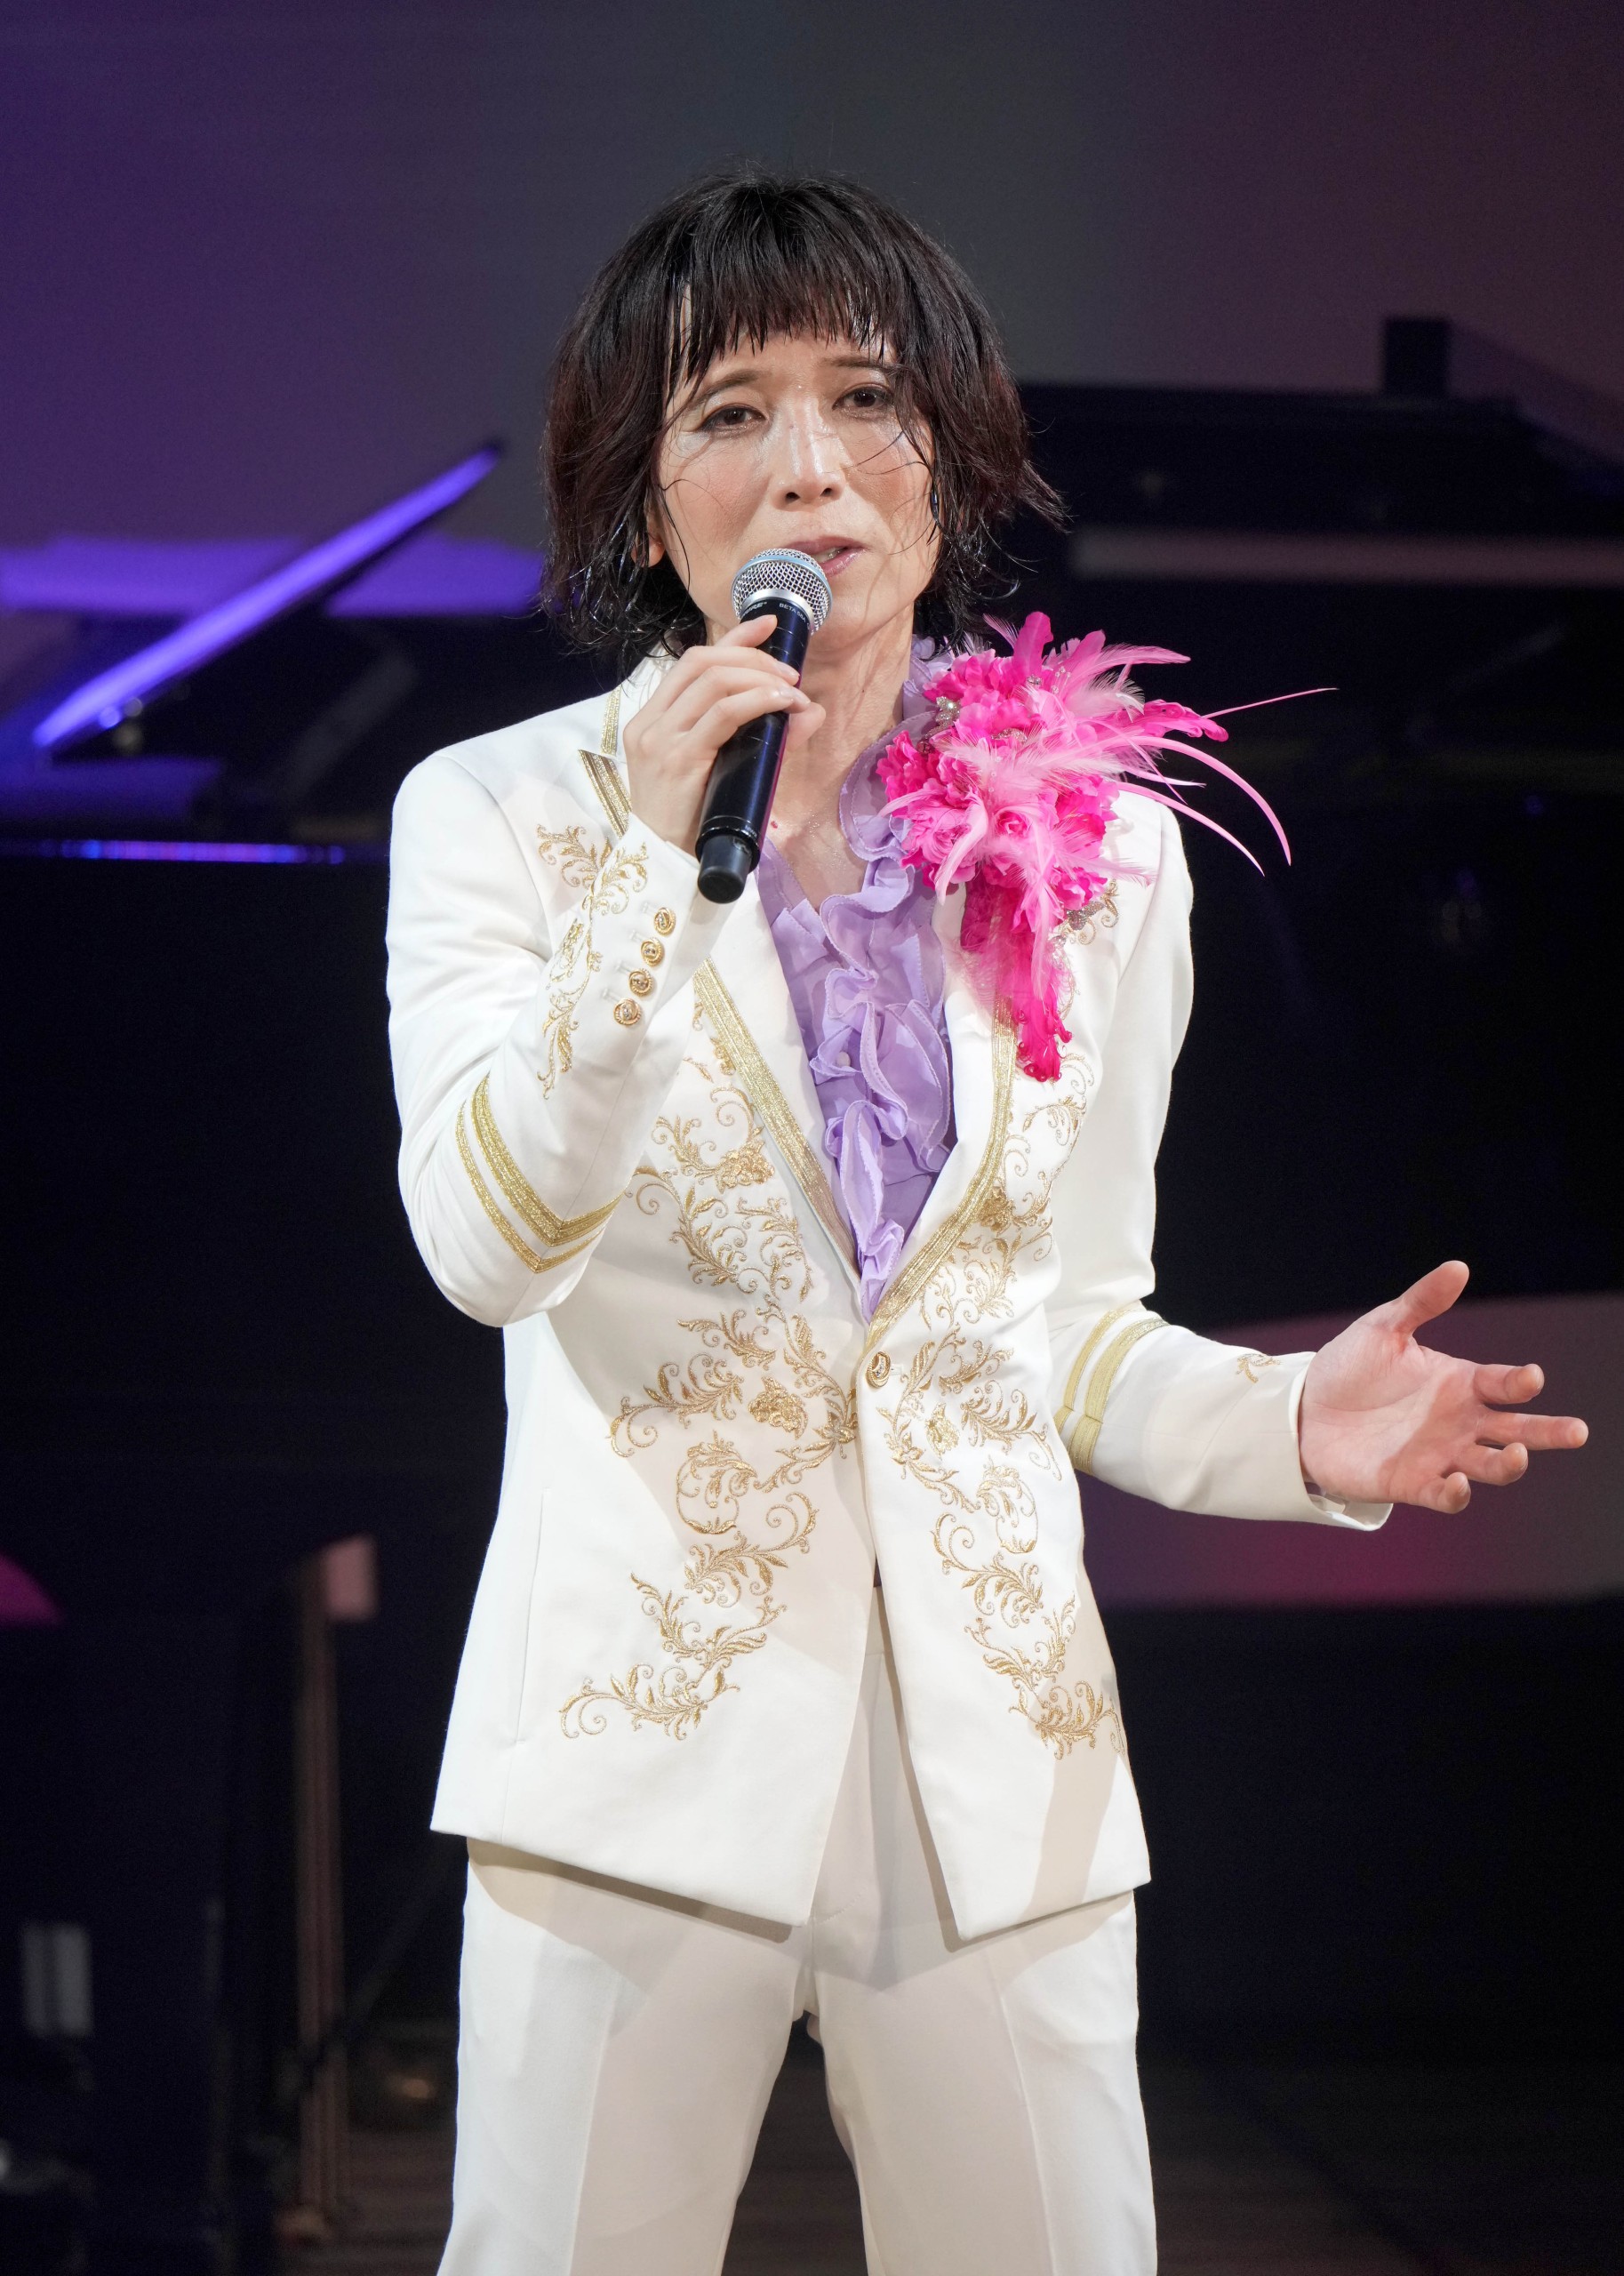 ムード歌謡の貴公子・タブレット純がデビュー20周年記念リサイタル。20 